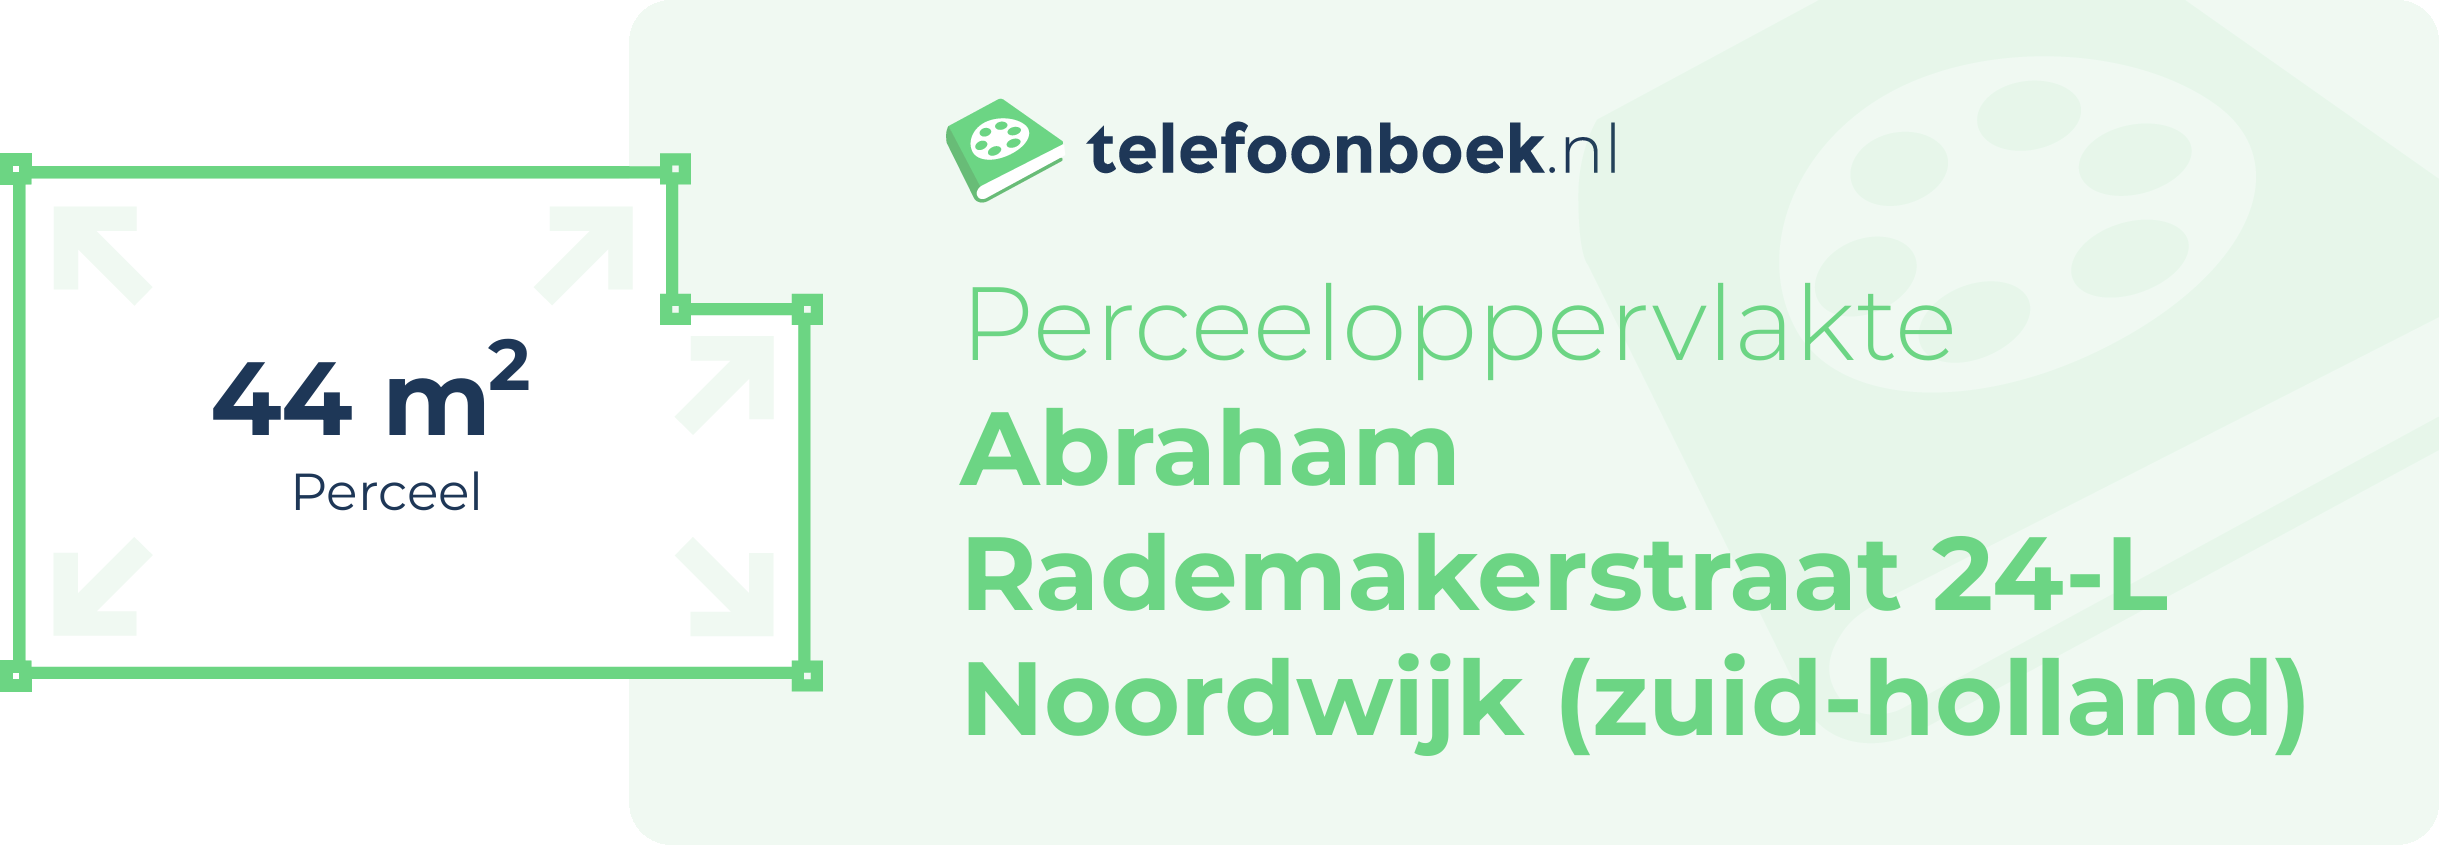 Perceeloppervlakte Abraham Rademakerstraat 24-L Noordwijk (Zuid-Holland)